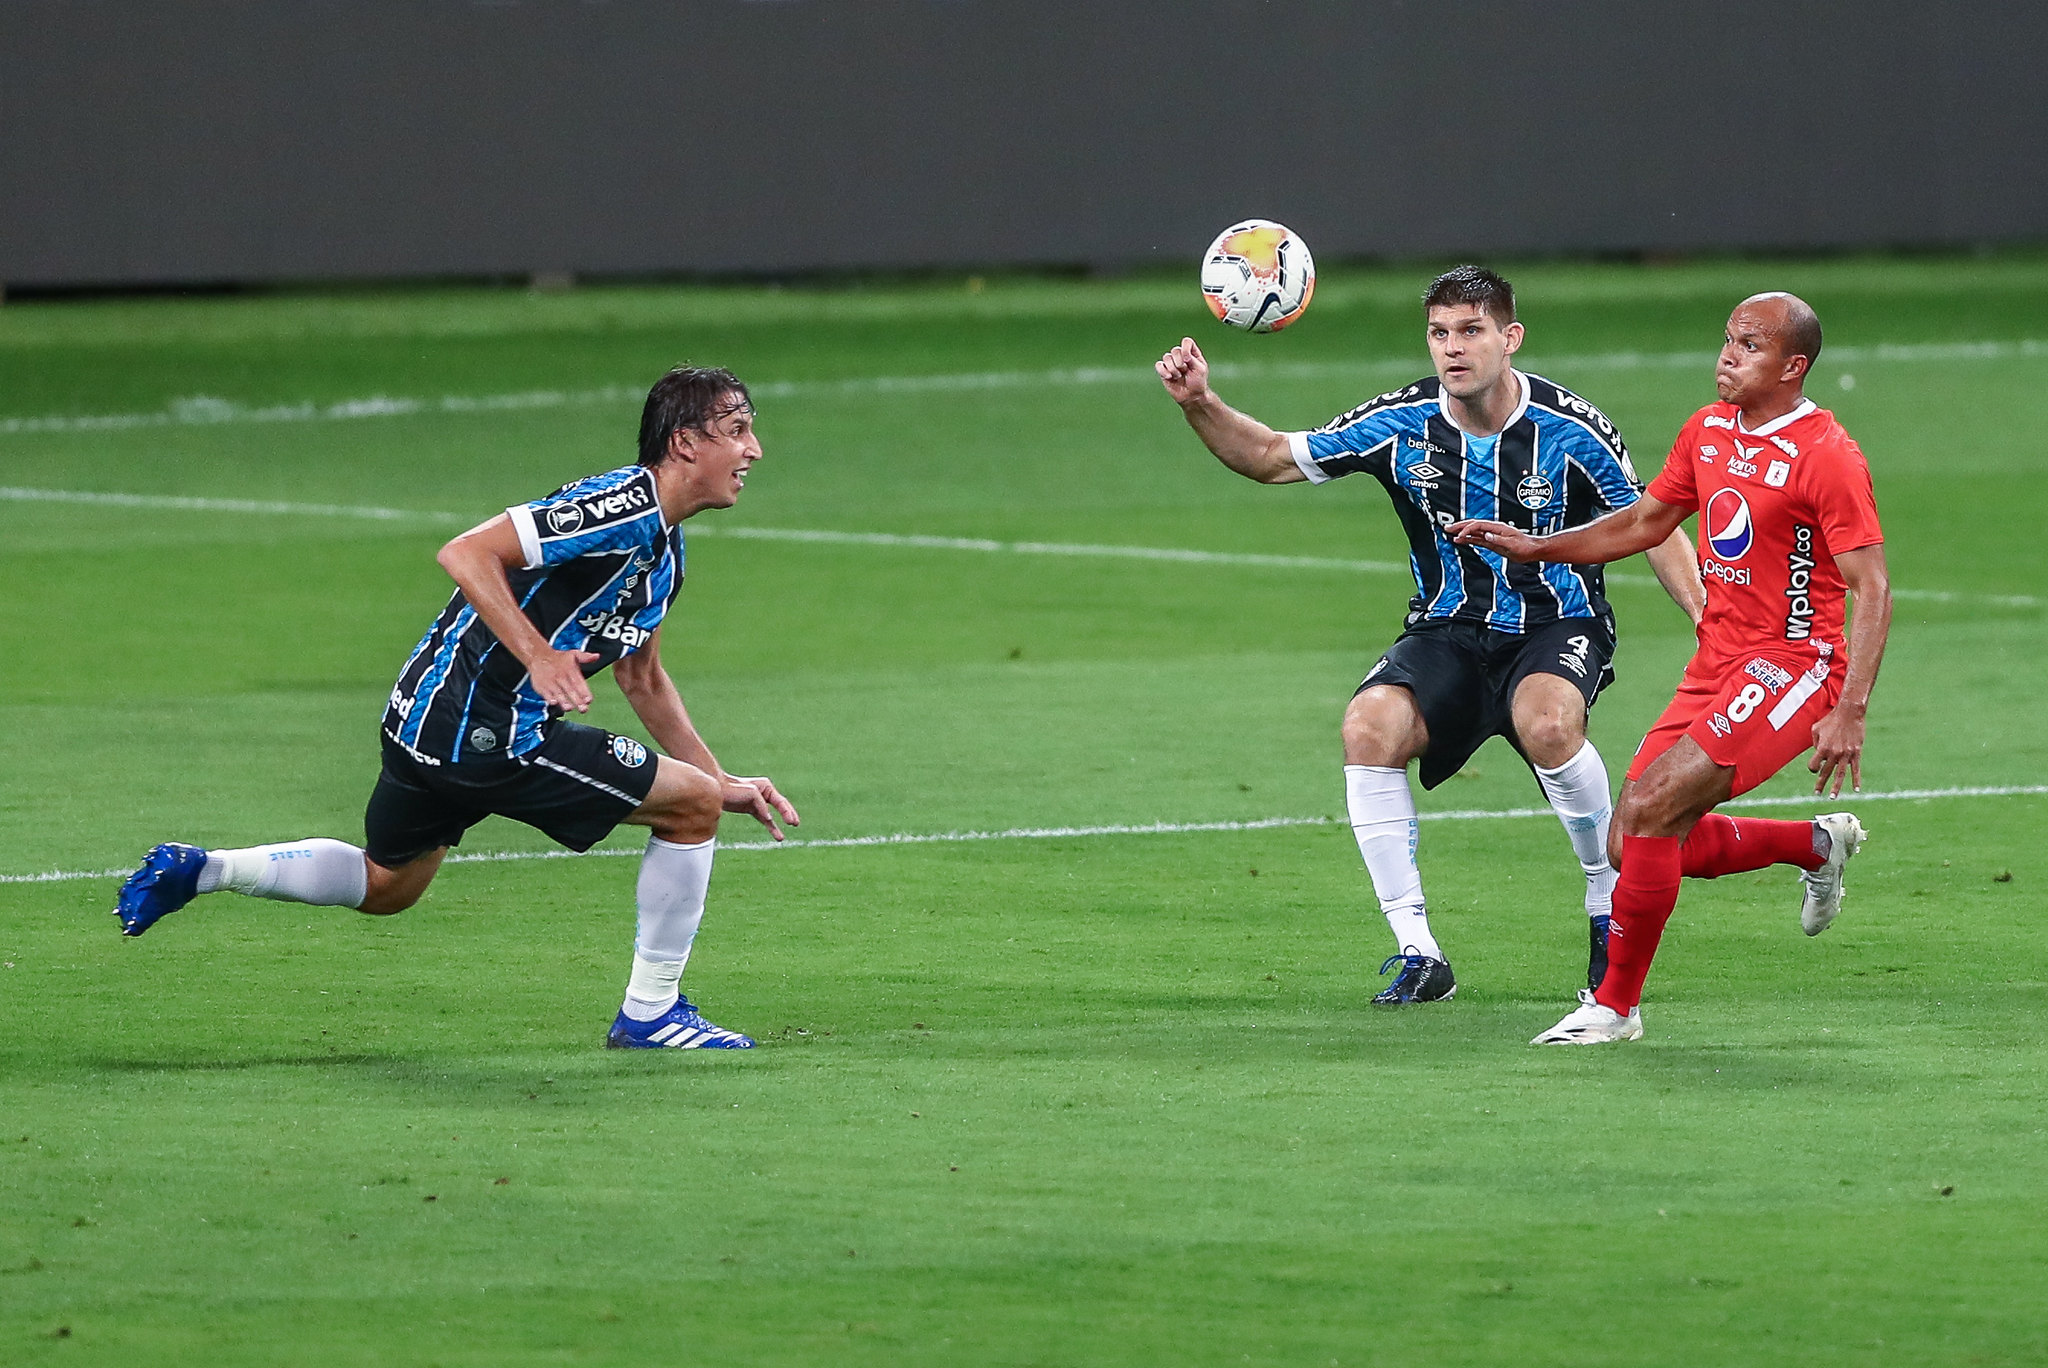 Libertadores: Grêmio empata no último minuto e garante 1ª posição